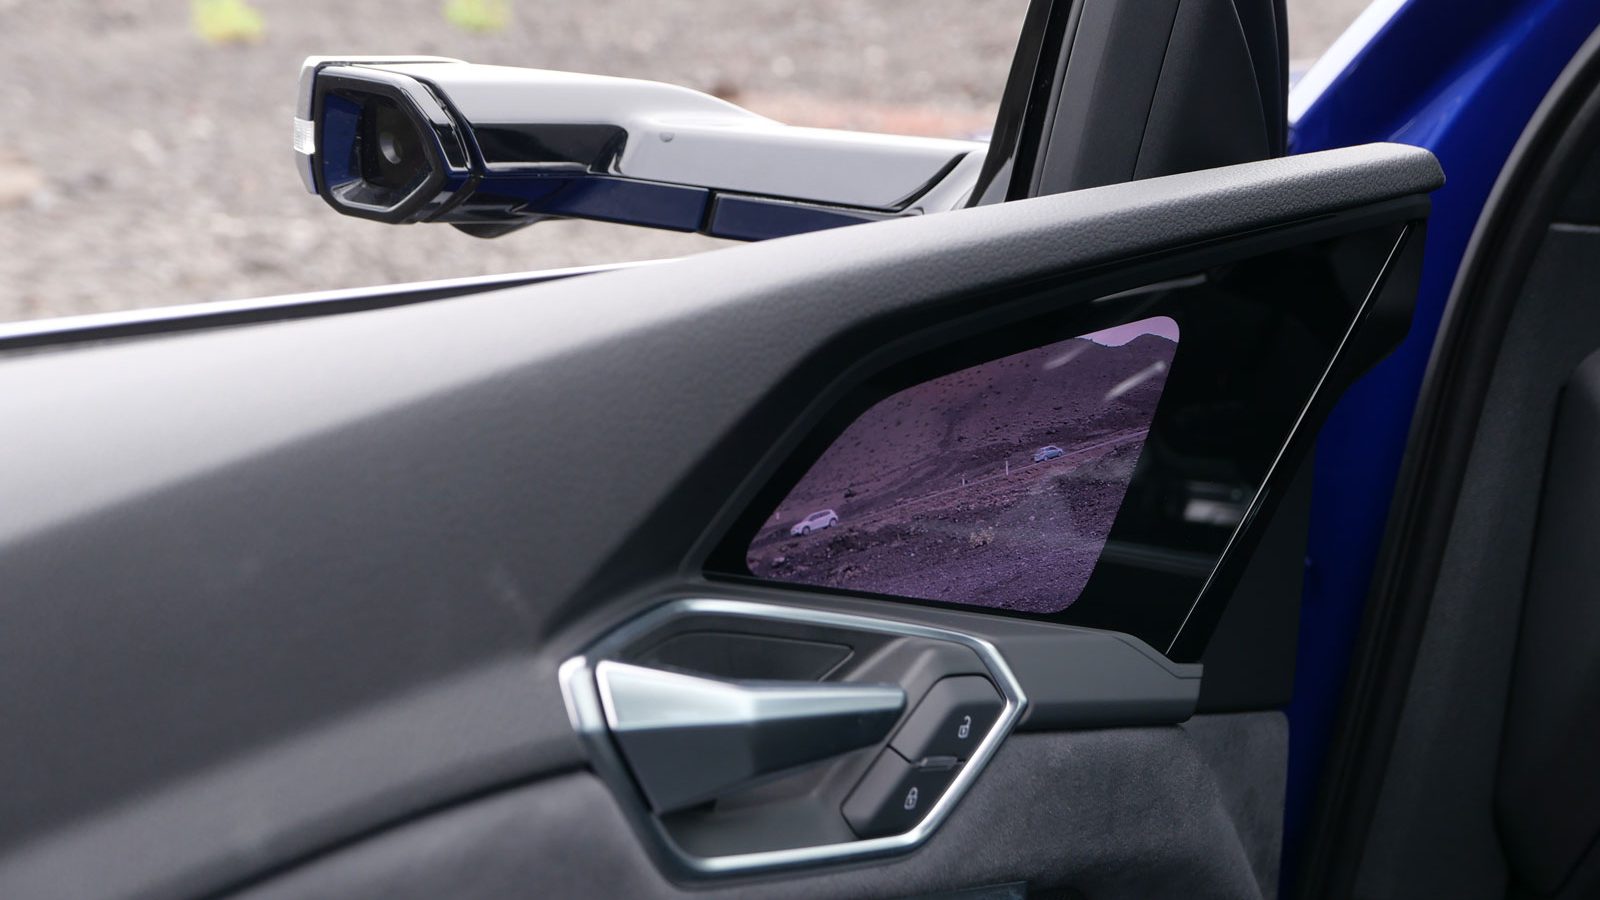 Das kann man sich sparen 
Der virtuelle Spiegel (Aufpreis 1650 Euro) soll die Aerodynamik verbessern und damit den Stromverbrauch senken. Der Monitor in der Fahrertür ist allerdings zu tief montiert - der Fahrer muss zu lange den Blick von der Fahrbahn nehmen.   